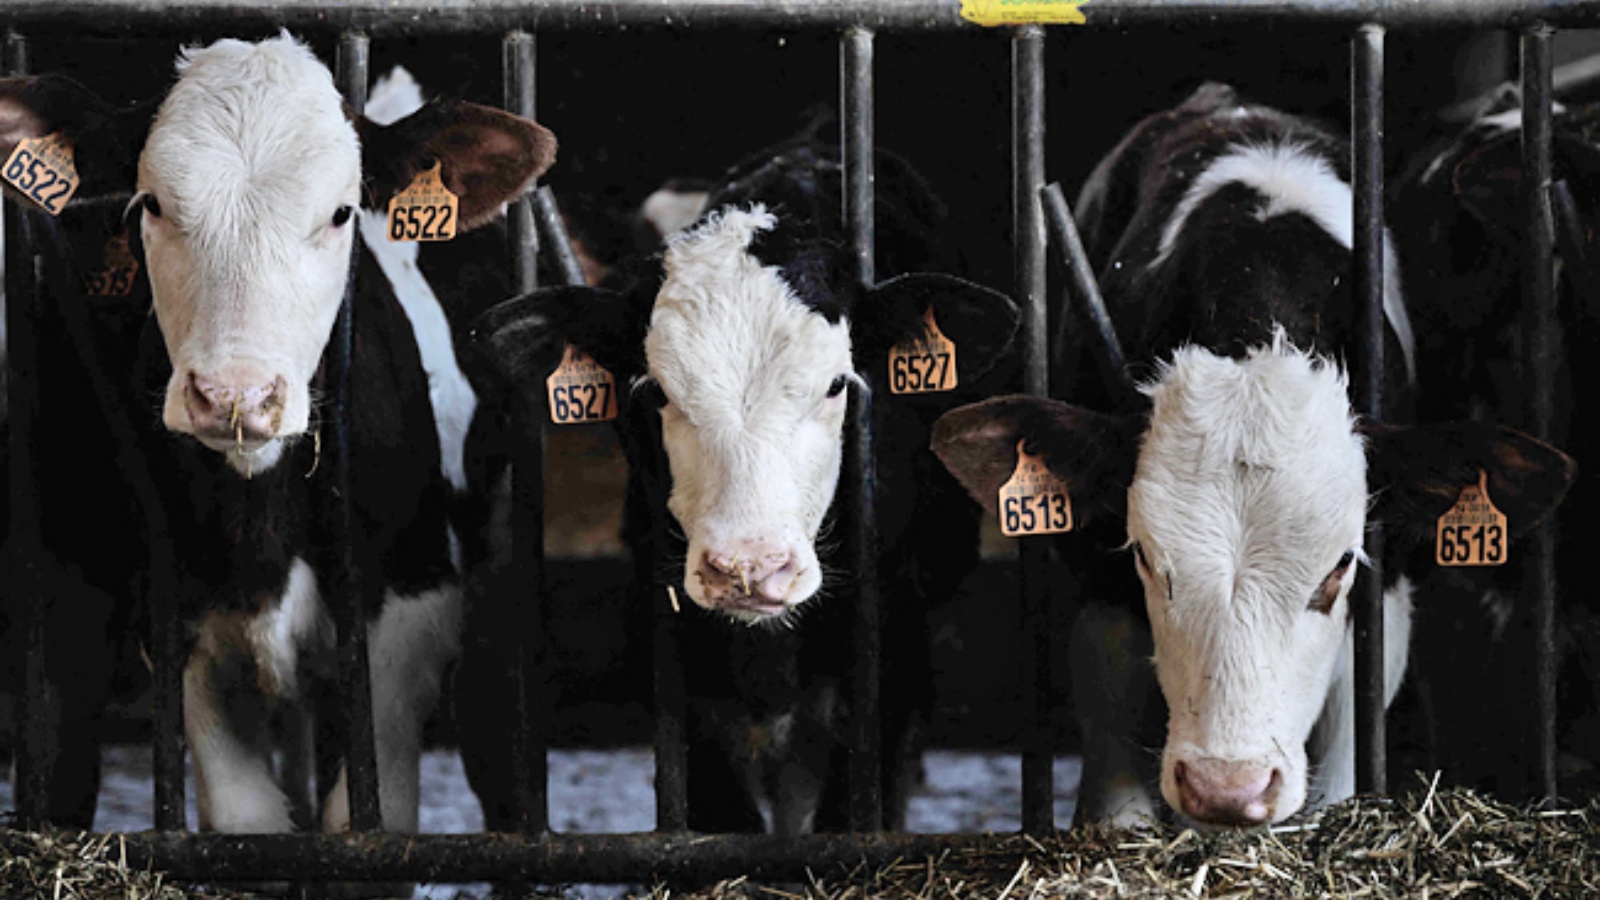 أبقار تقف في حظائرها في مزرعة عائلة Guerin، التي تنتج الميثان الحيوي، في Beaumontois-en-Perigord، فرنسا